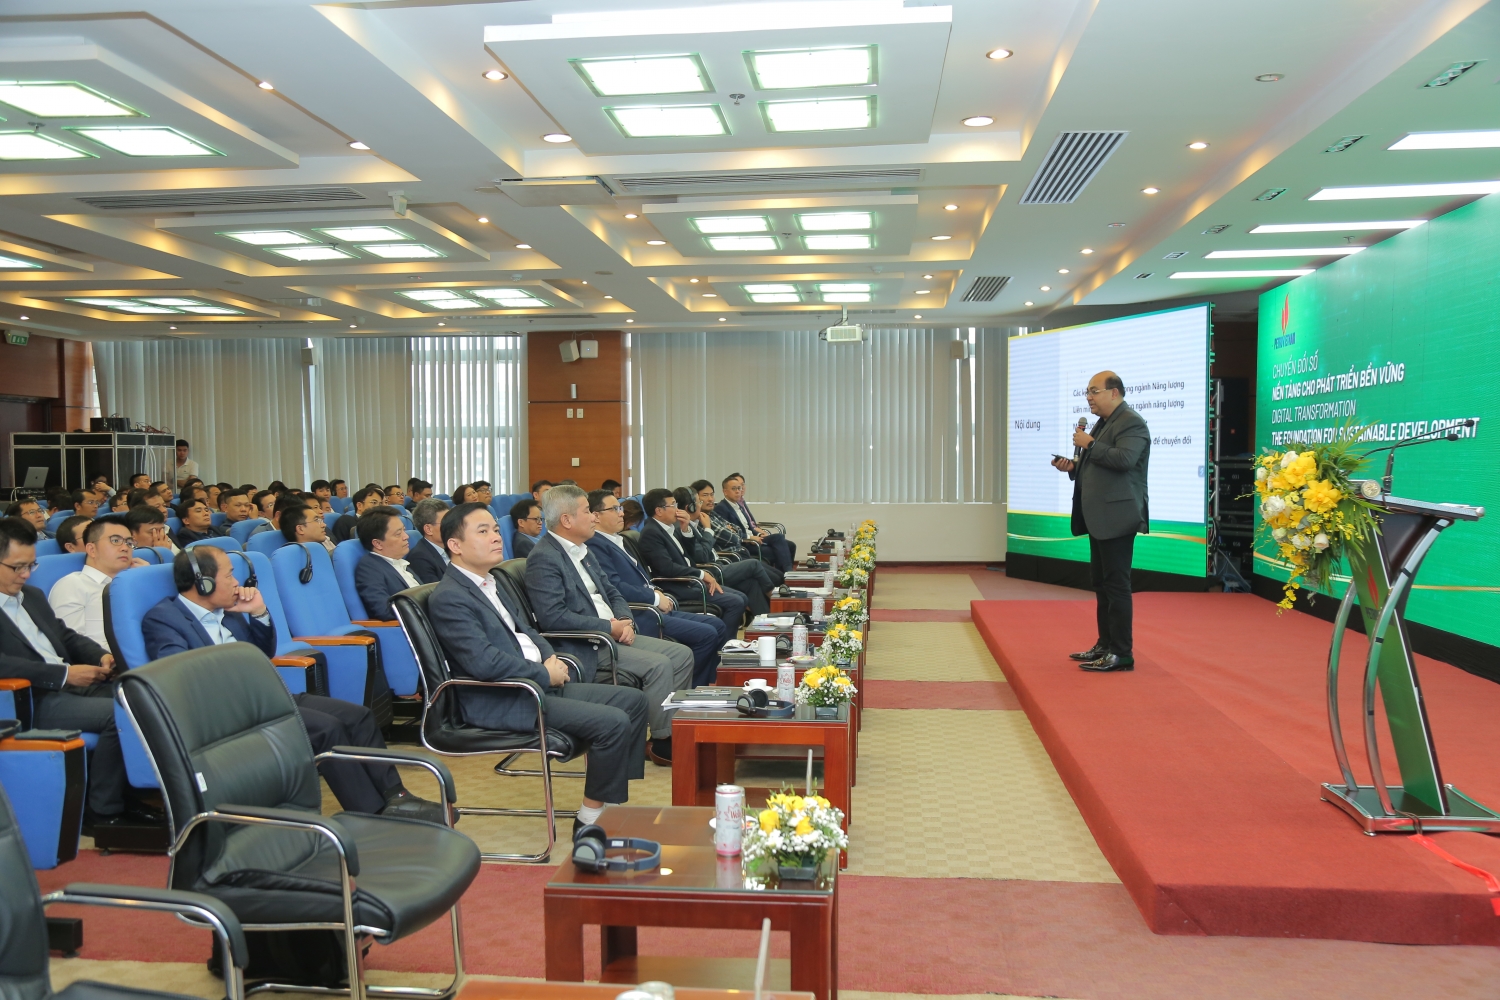 Ông Manish PraKash, Giám đốc khối khách hàng Chính phủ và Doanh nghiệp nhà nước Microsoft Châu Á- Thái Bình Dương trình bày tham luận tại Hội thảo